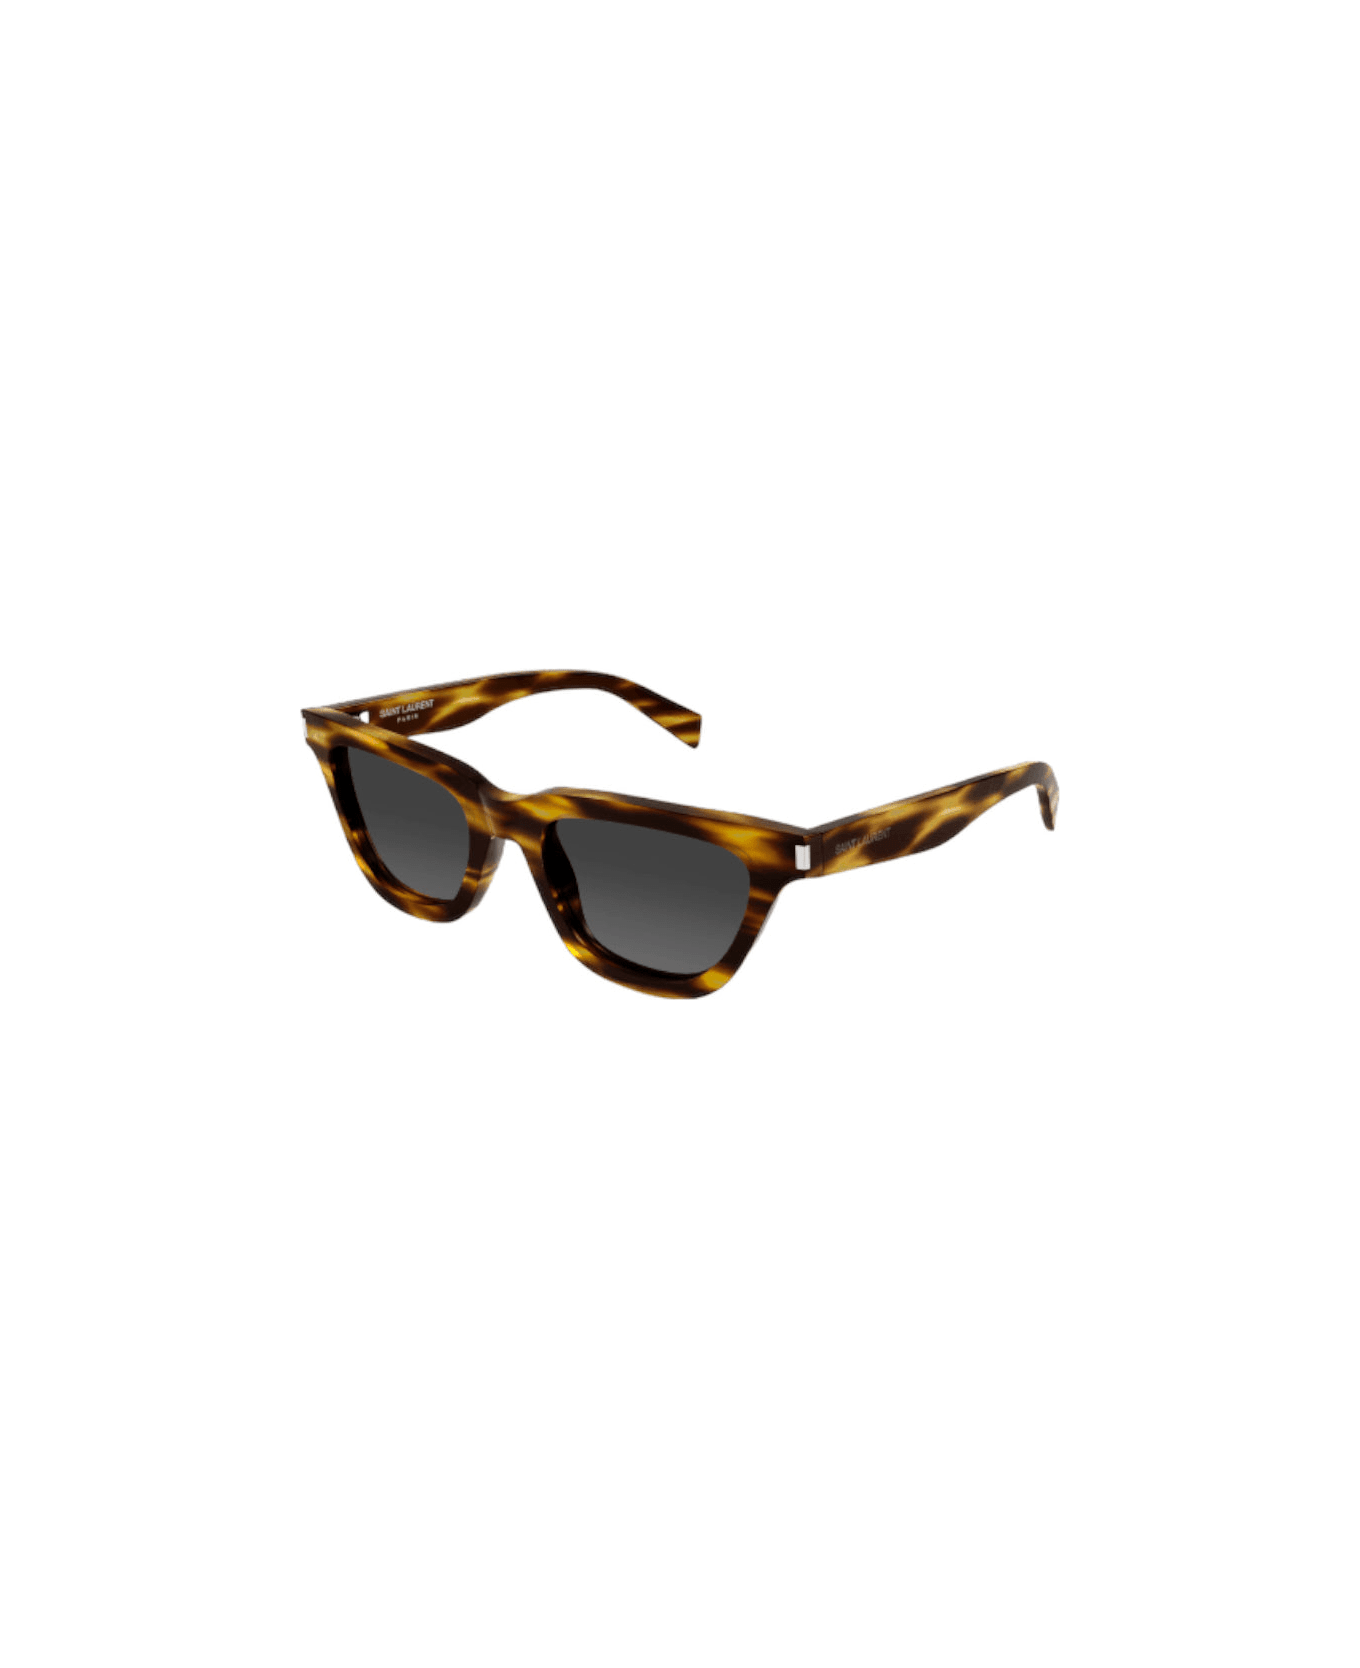 Saint Laurent Eyewear Sl 462 - Sulpice - Light Havana Sunglasses